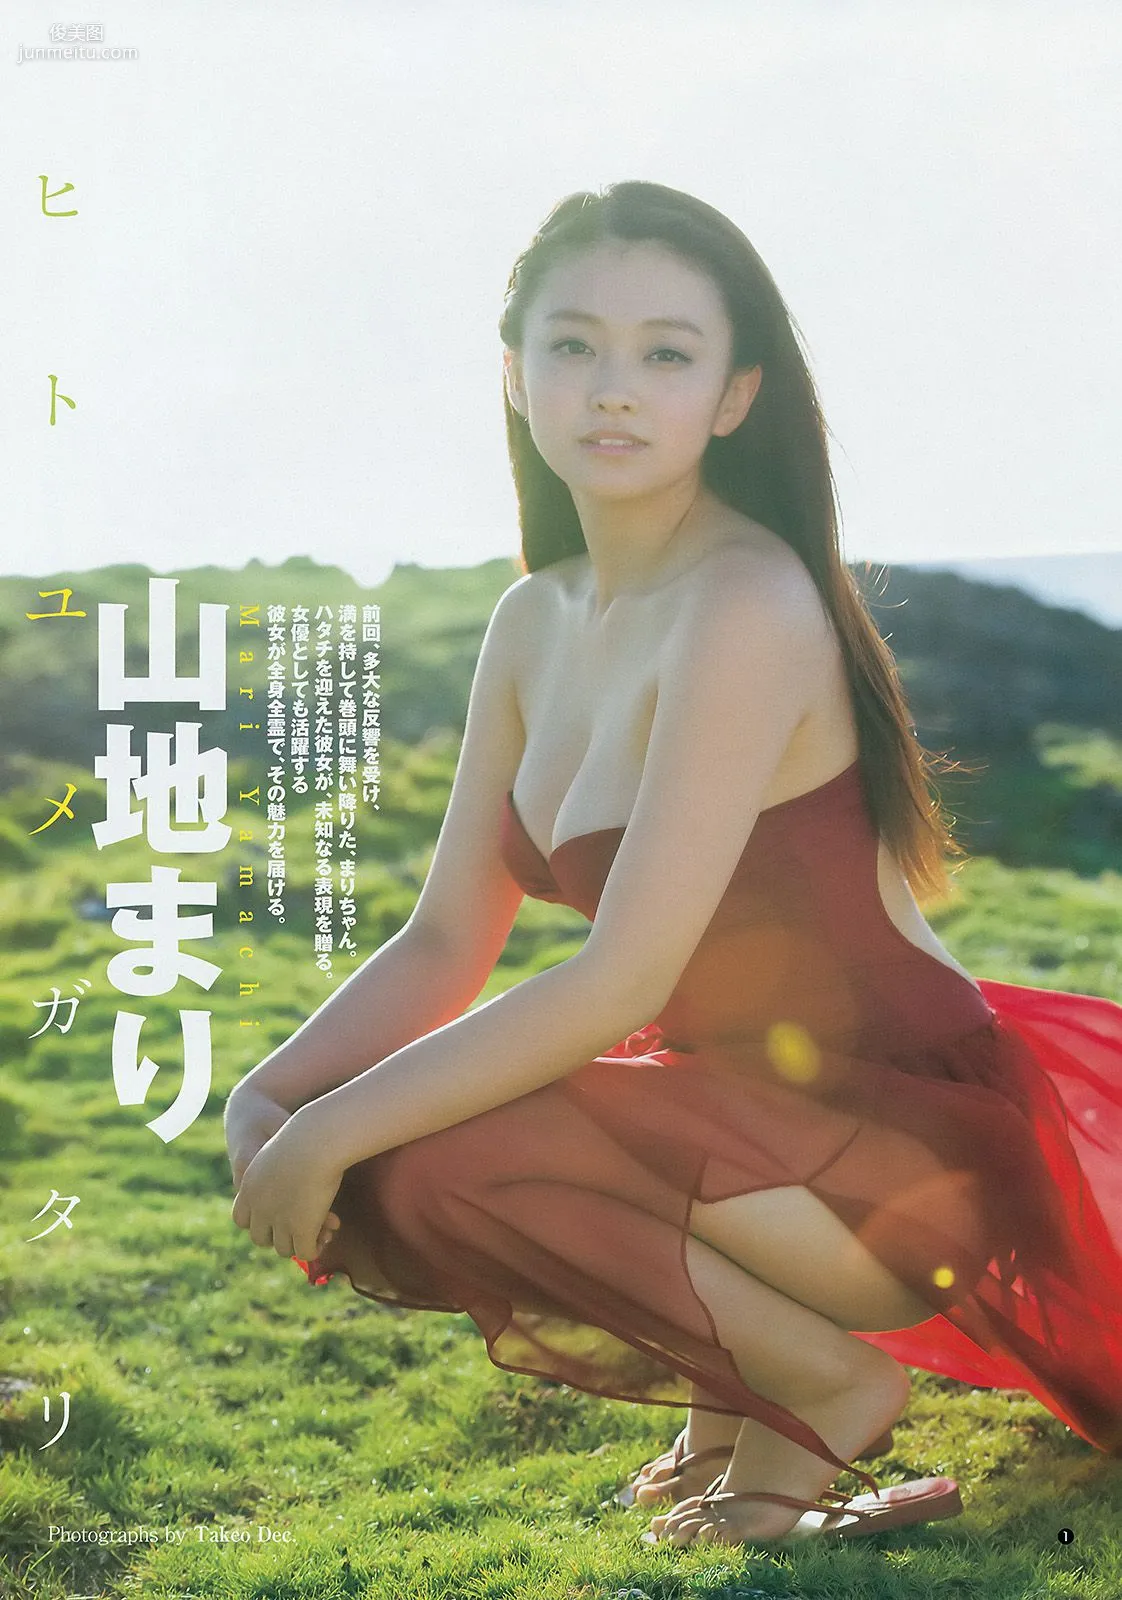 山地まり 葉月ゆめ [Weekly Young Jump] 2014年No.34 写真杂志2